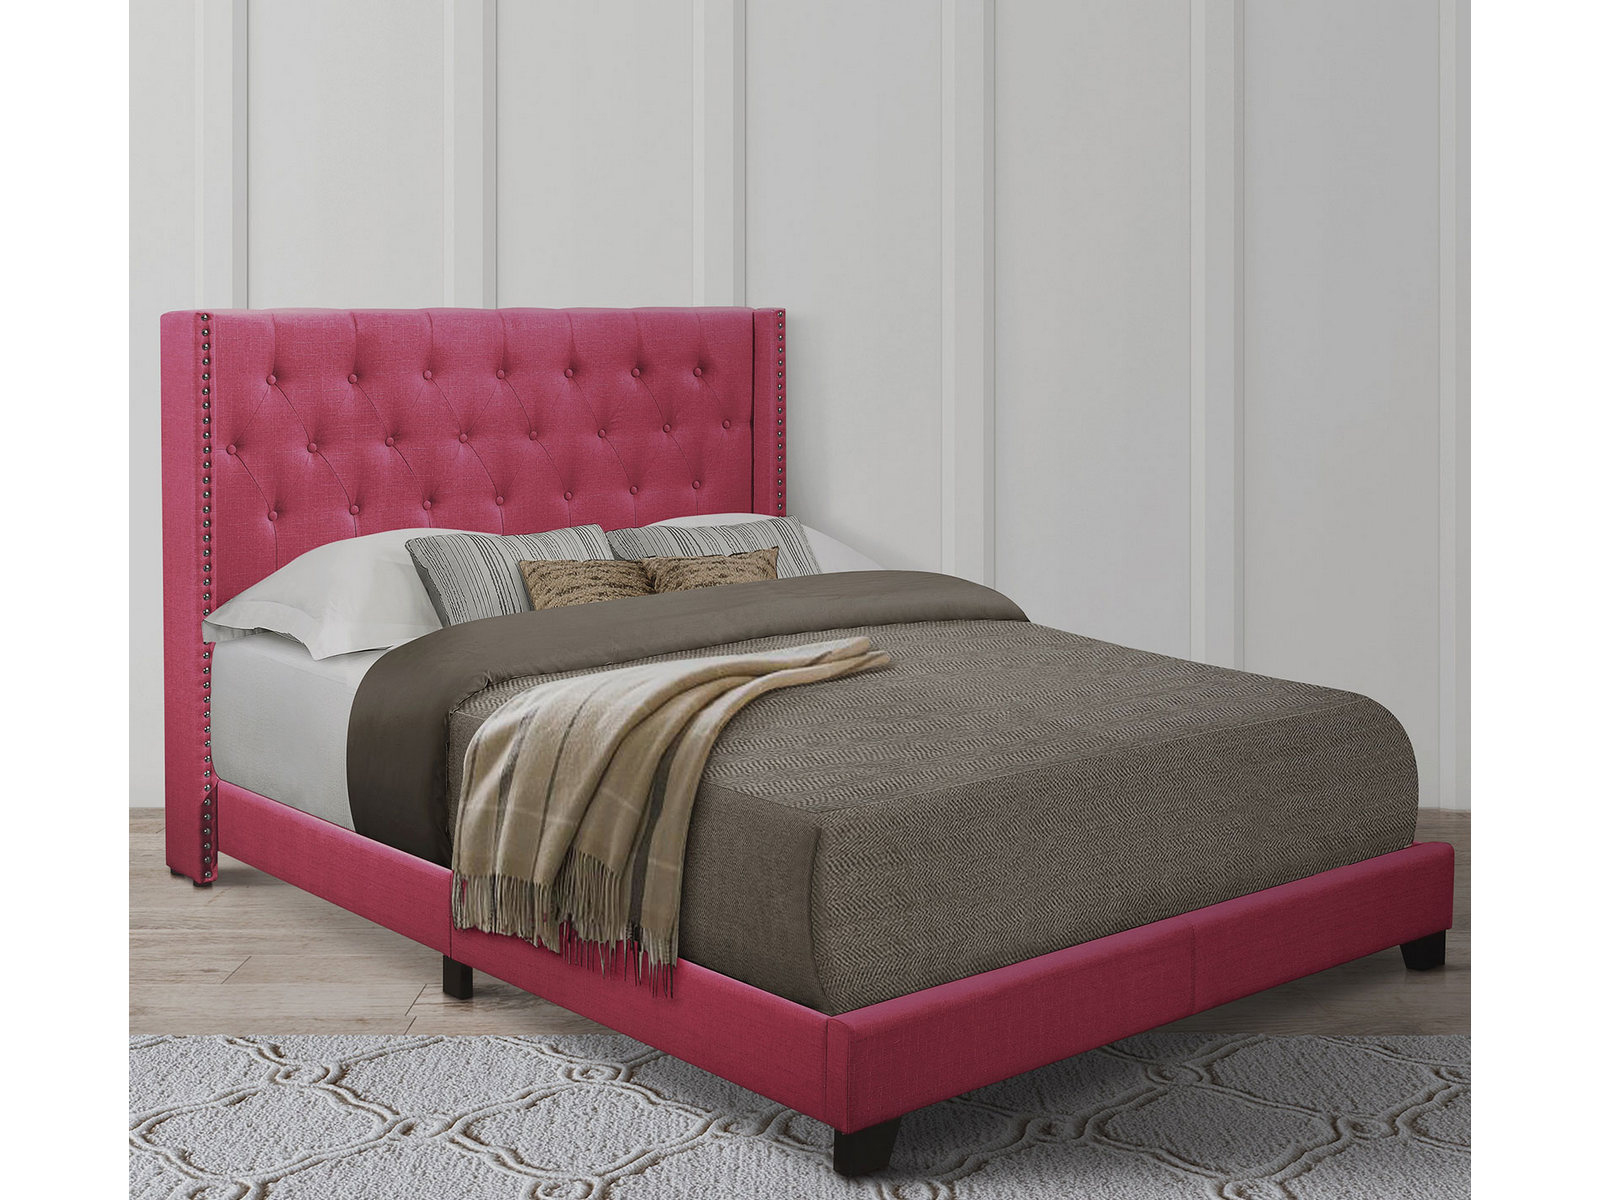 Homelegance Upholstered Bed Set | Full | Avery Bed Frame & Headboard | Pink